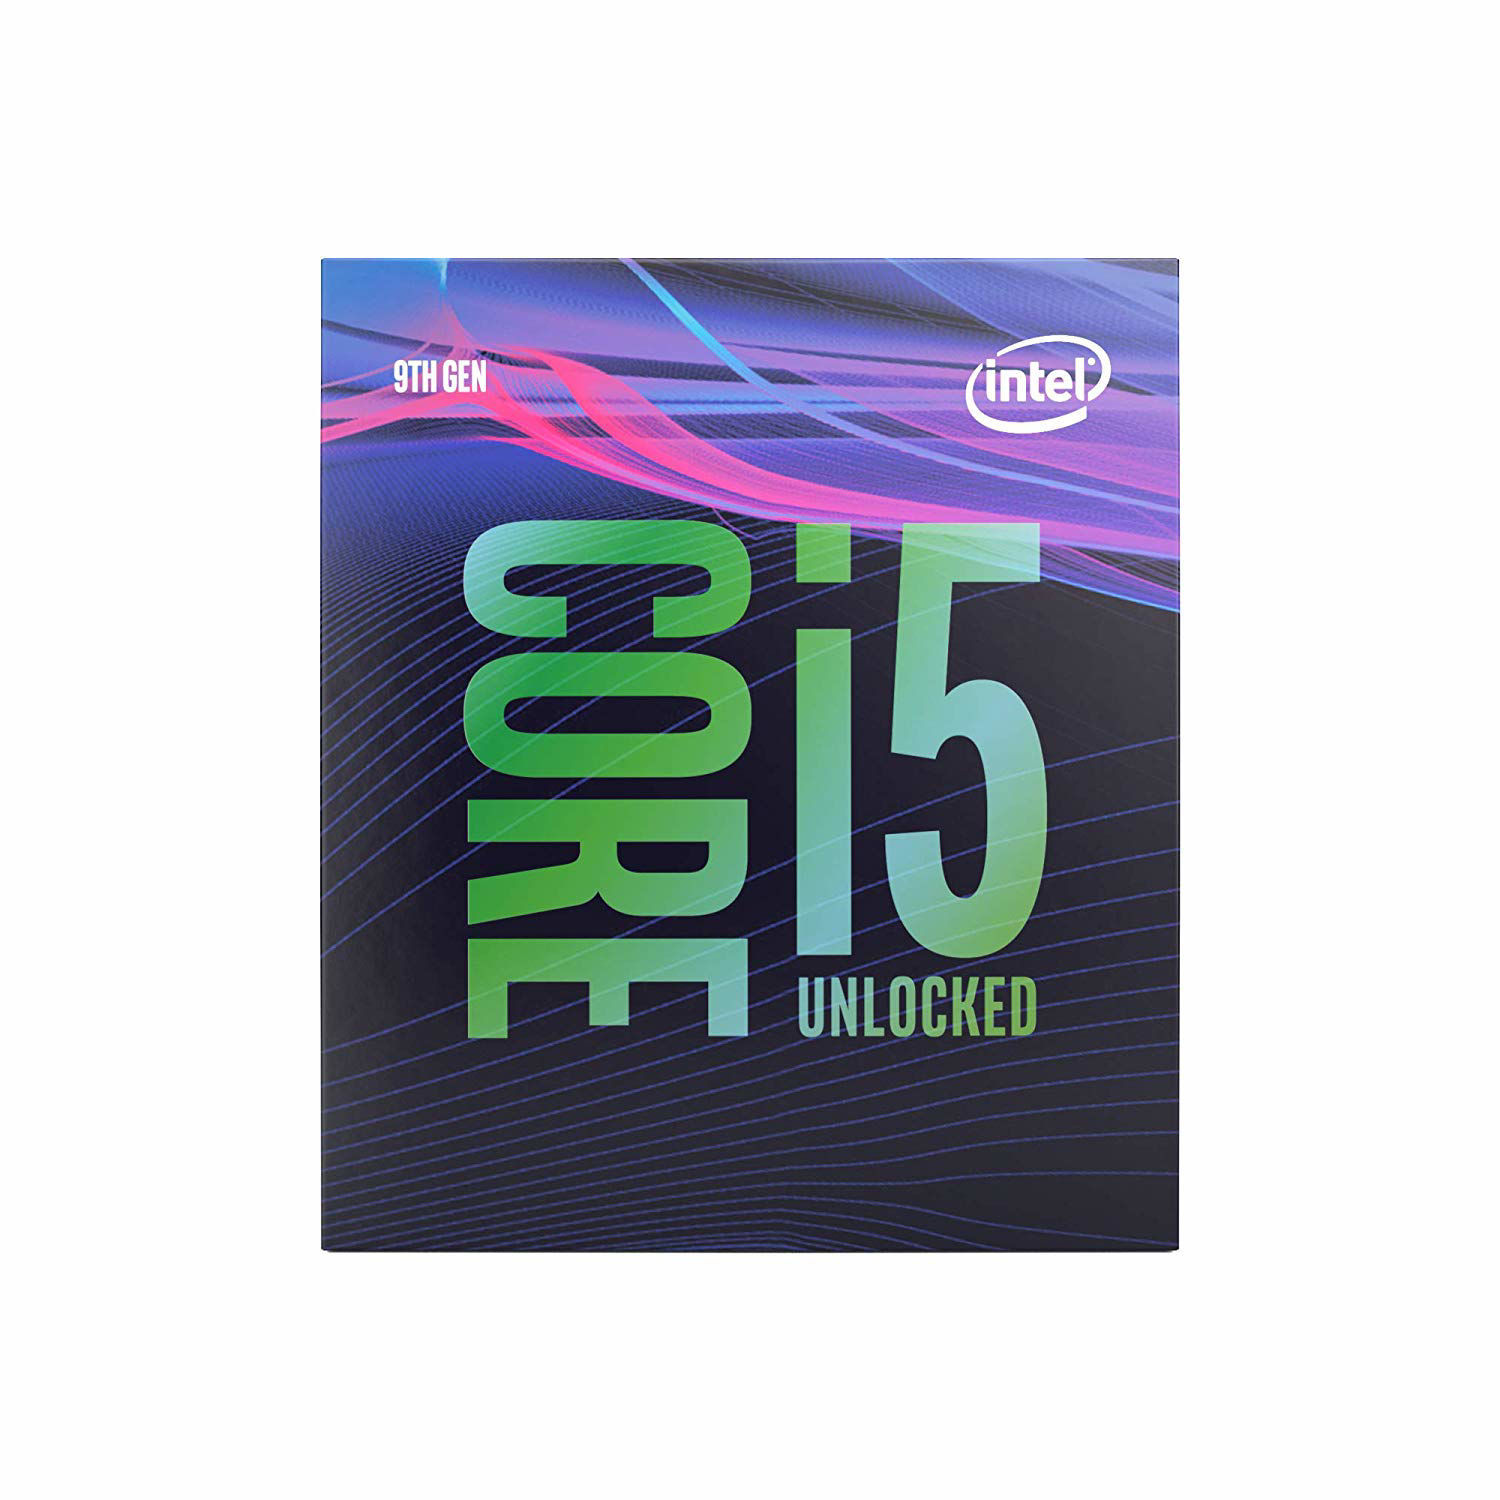 Intel Core i5-9600K Processor (9M Cache, up to 4.60 GHz) – gamersme.com